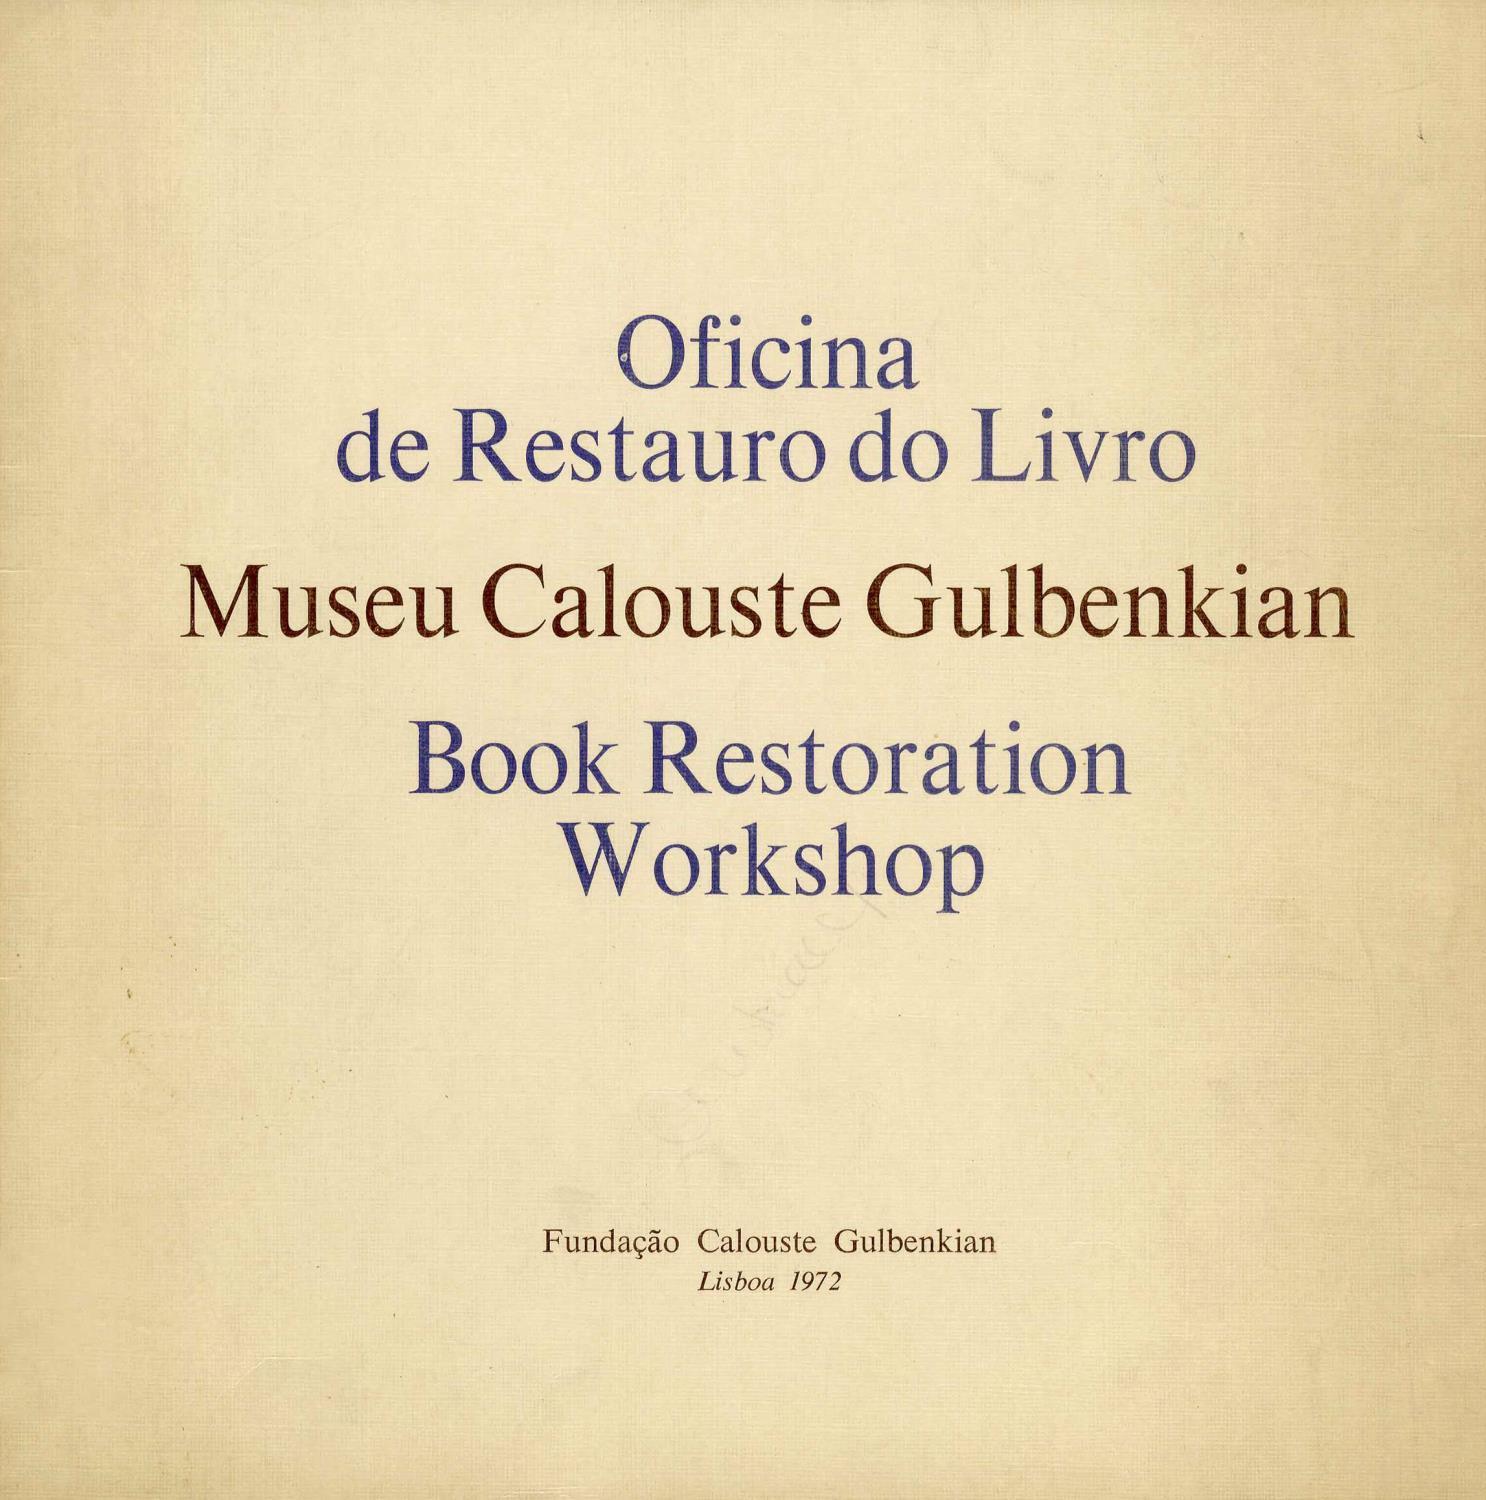 Oficina de Restauro do Livro. Museu Calouste Gulbenkian / Book Restoration Workshop